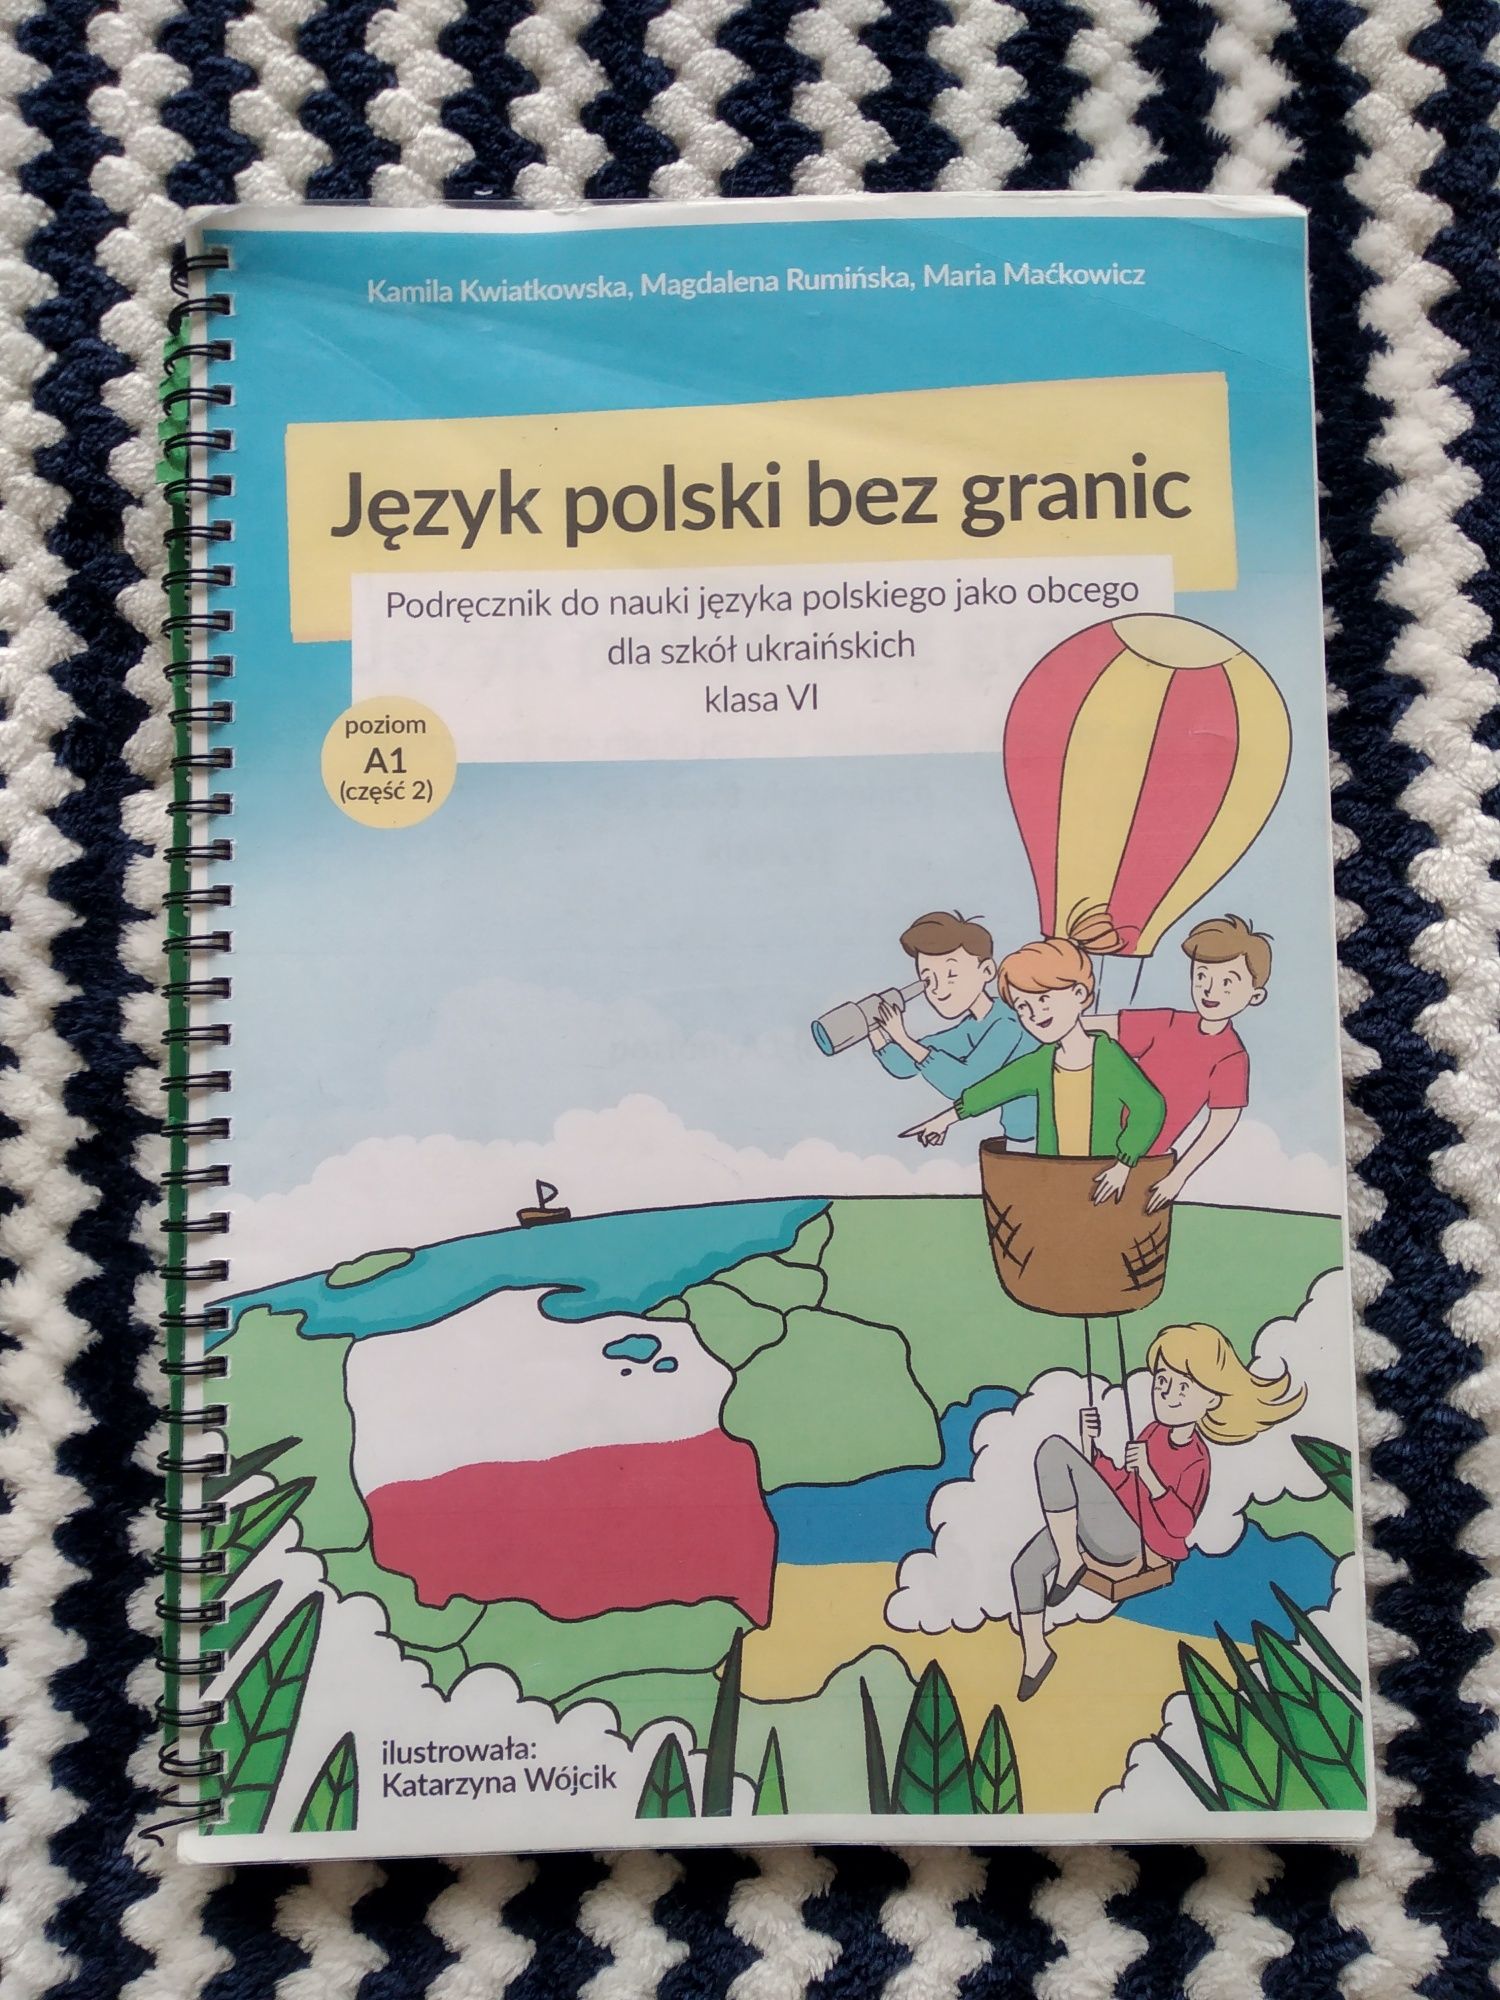 Книга з польської мови за 6 клас